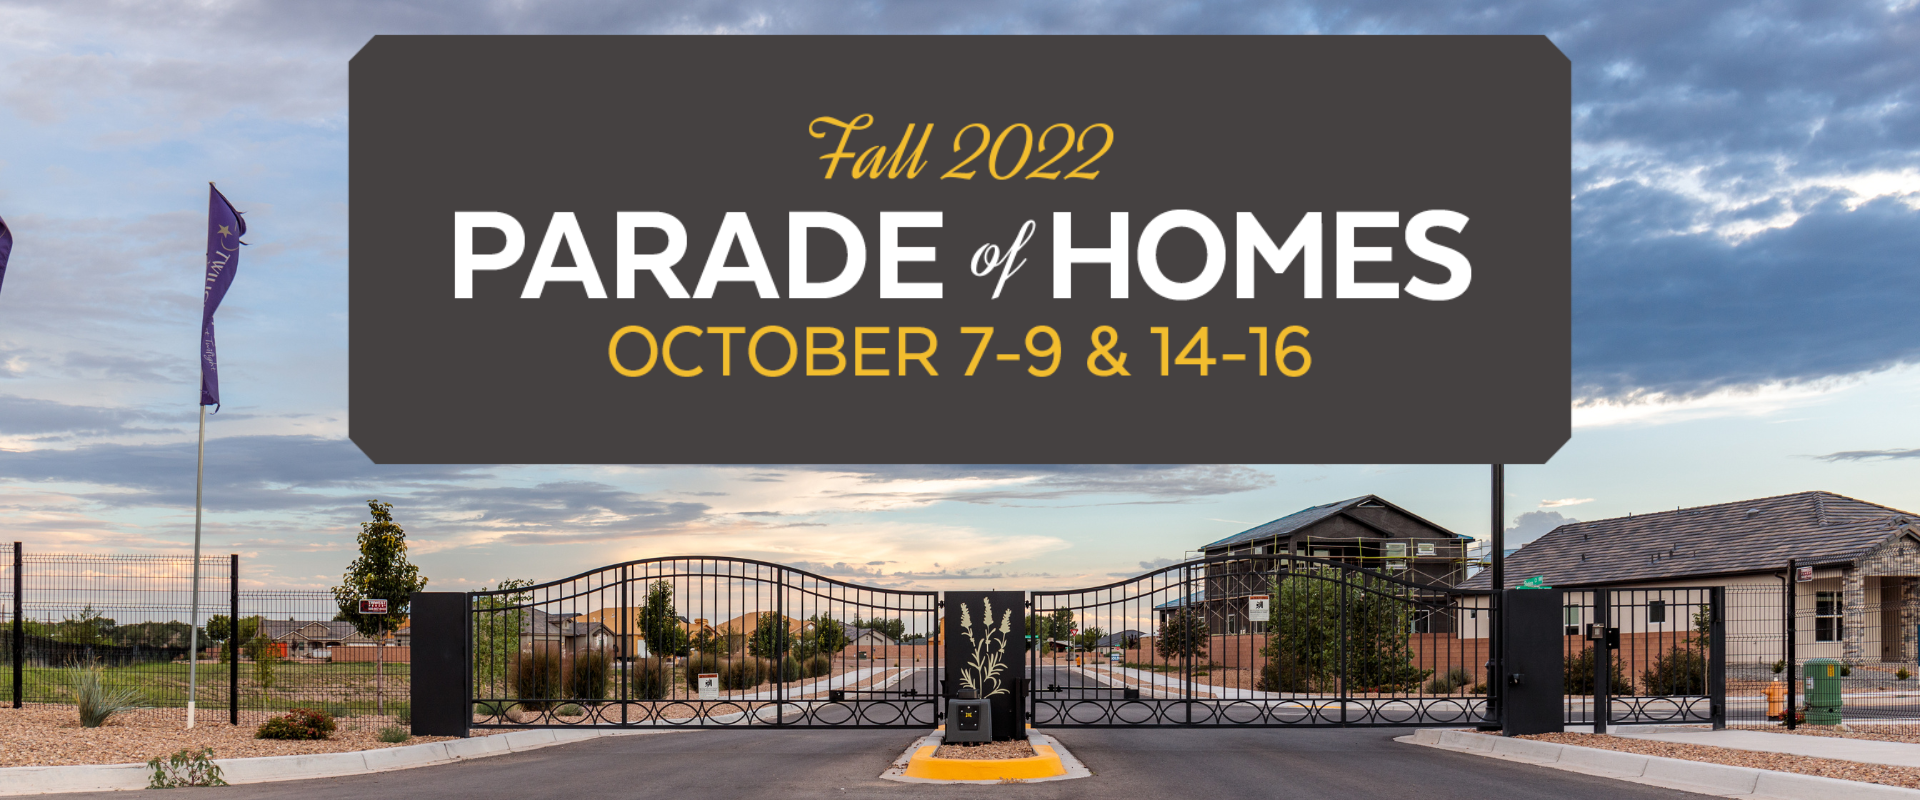 Parade of Homes Albuquerque & New Mexico Fall 2022